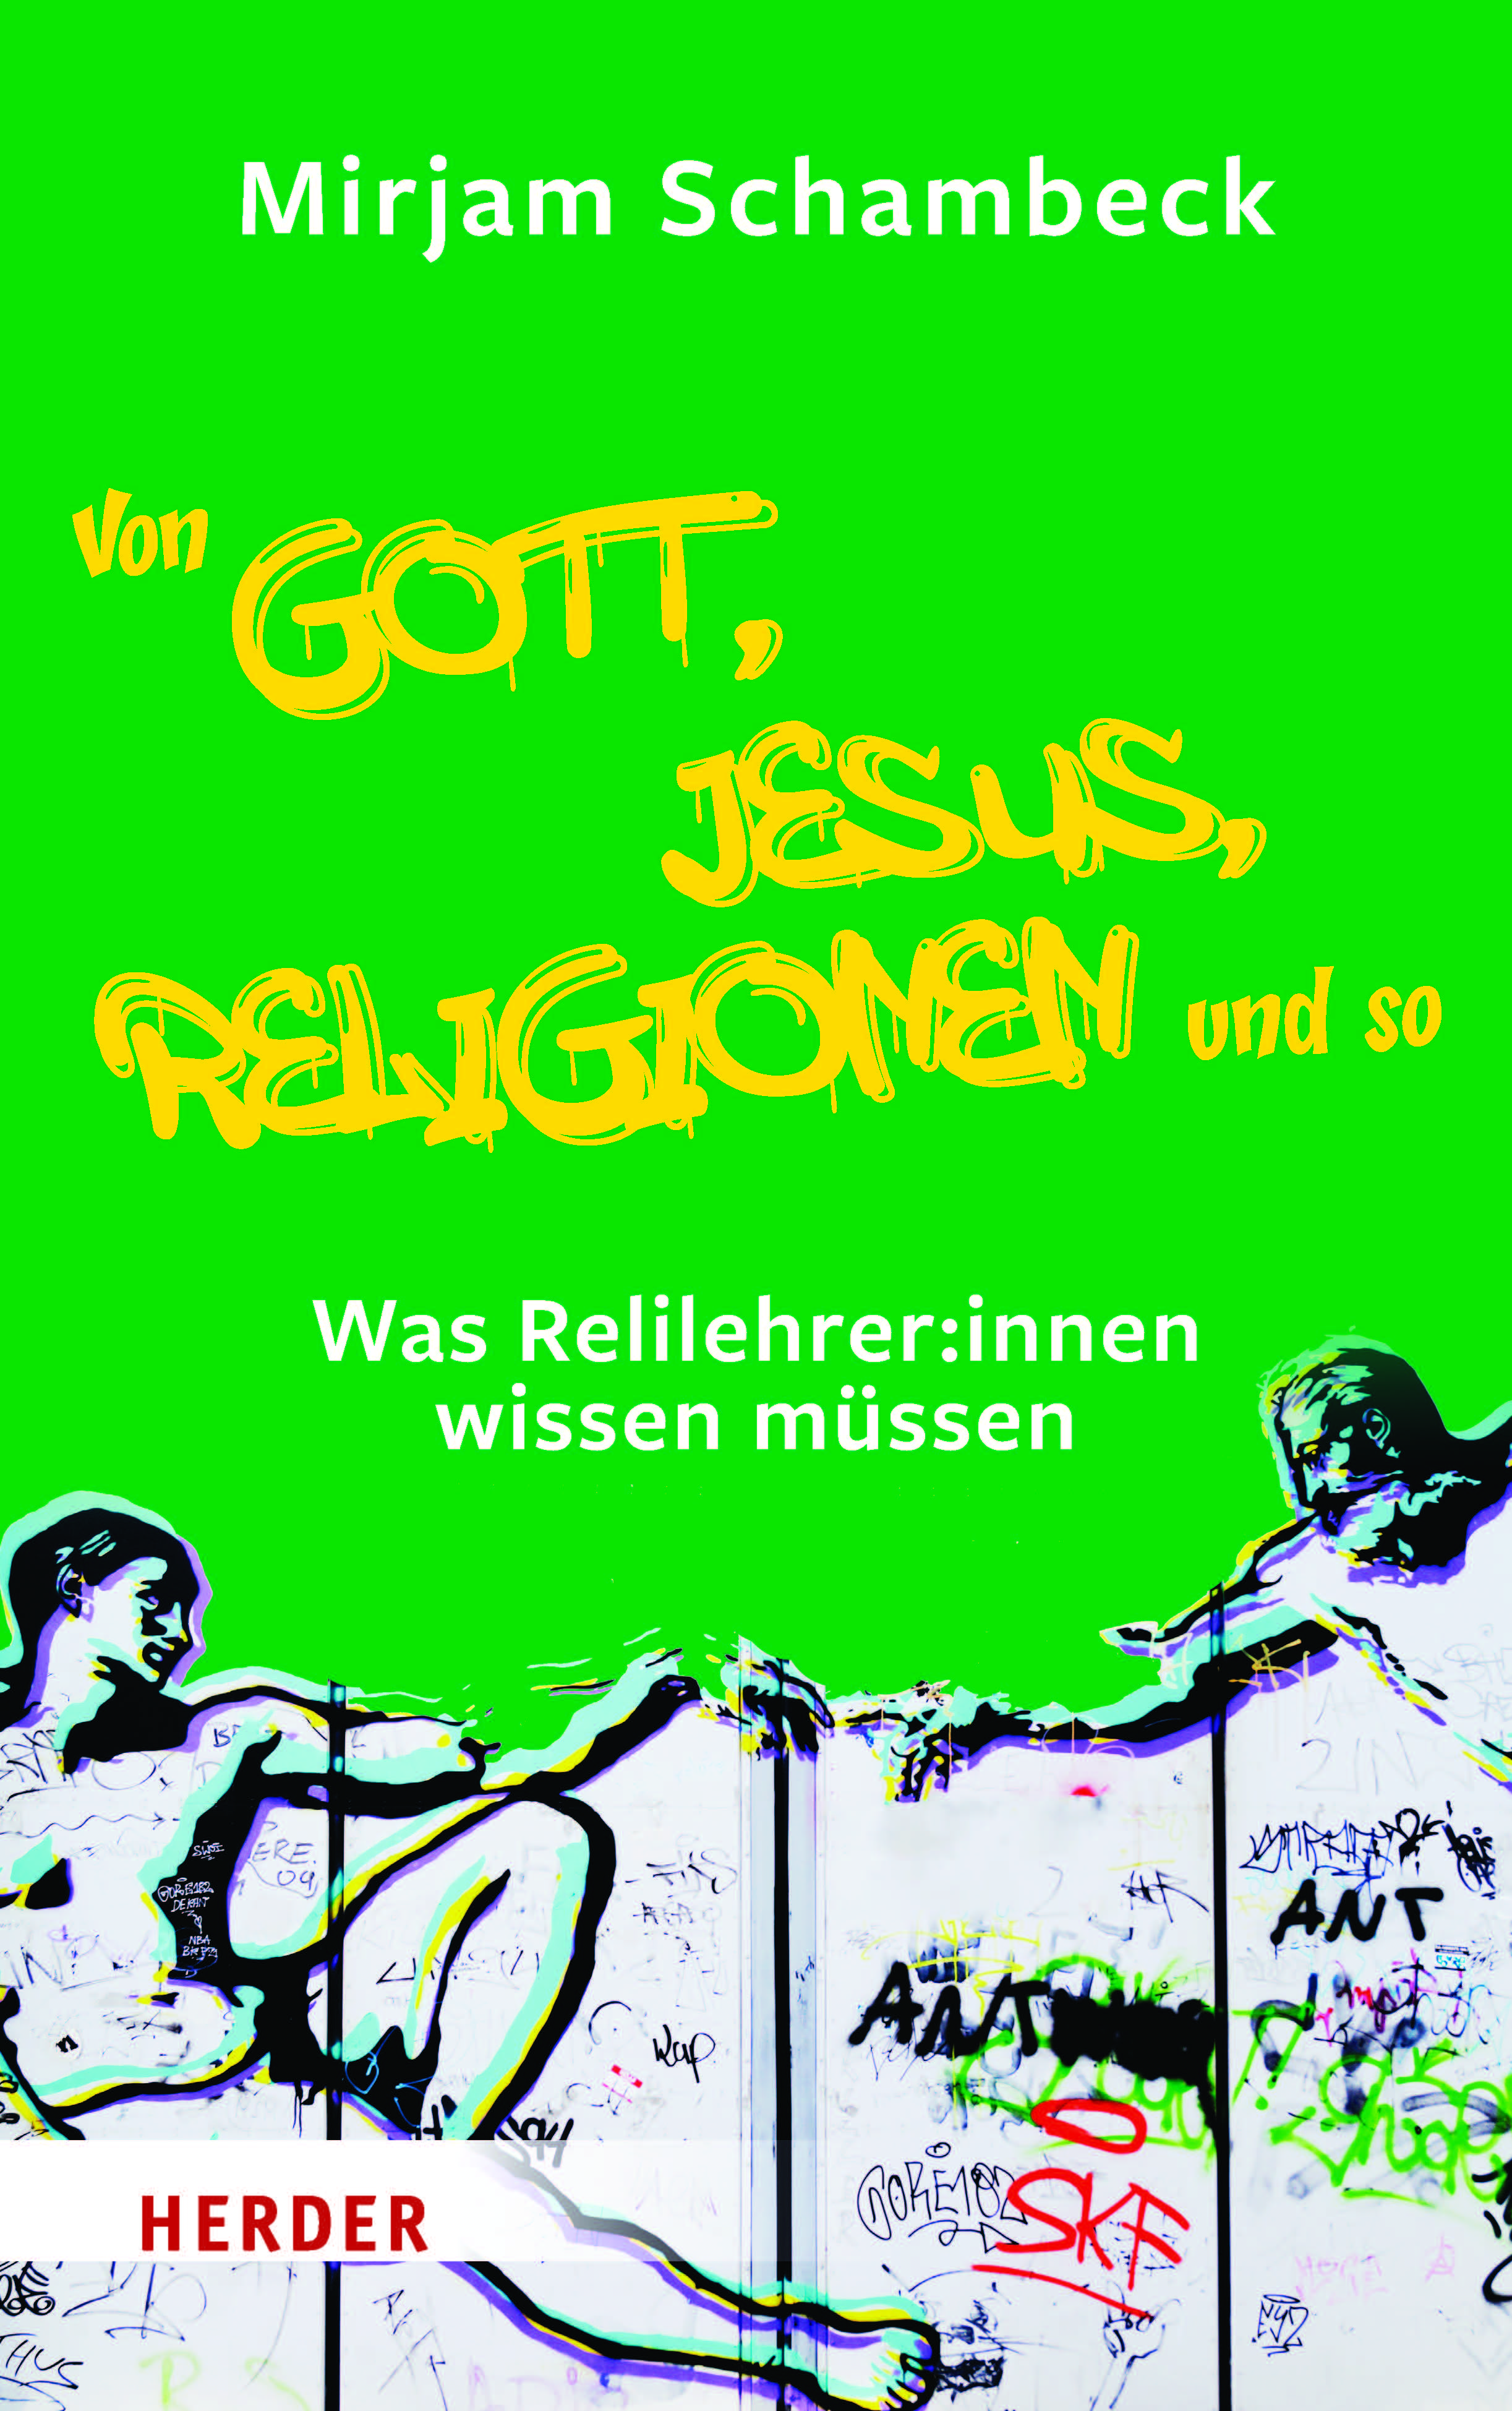 39194-1_Schambeck_Von Gott Jesus Religion und so_V3c.jpg